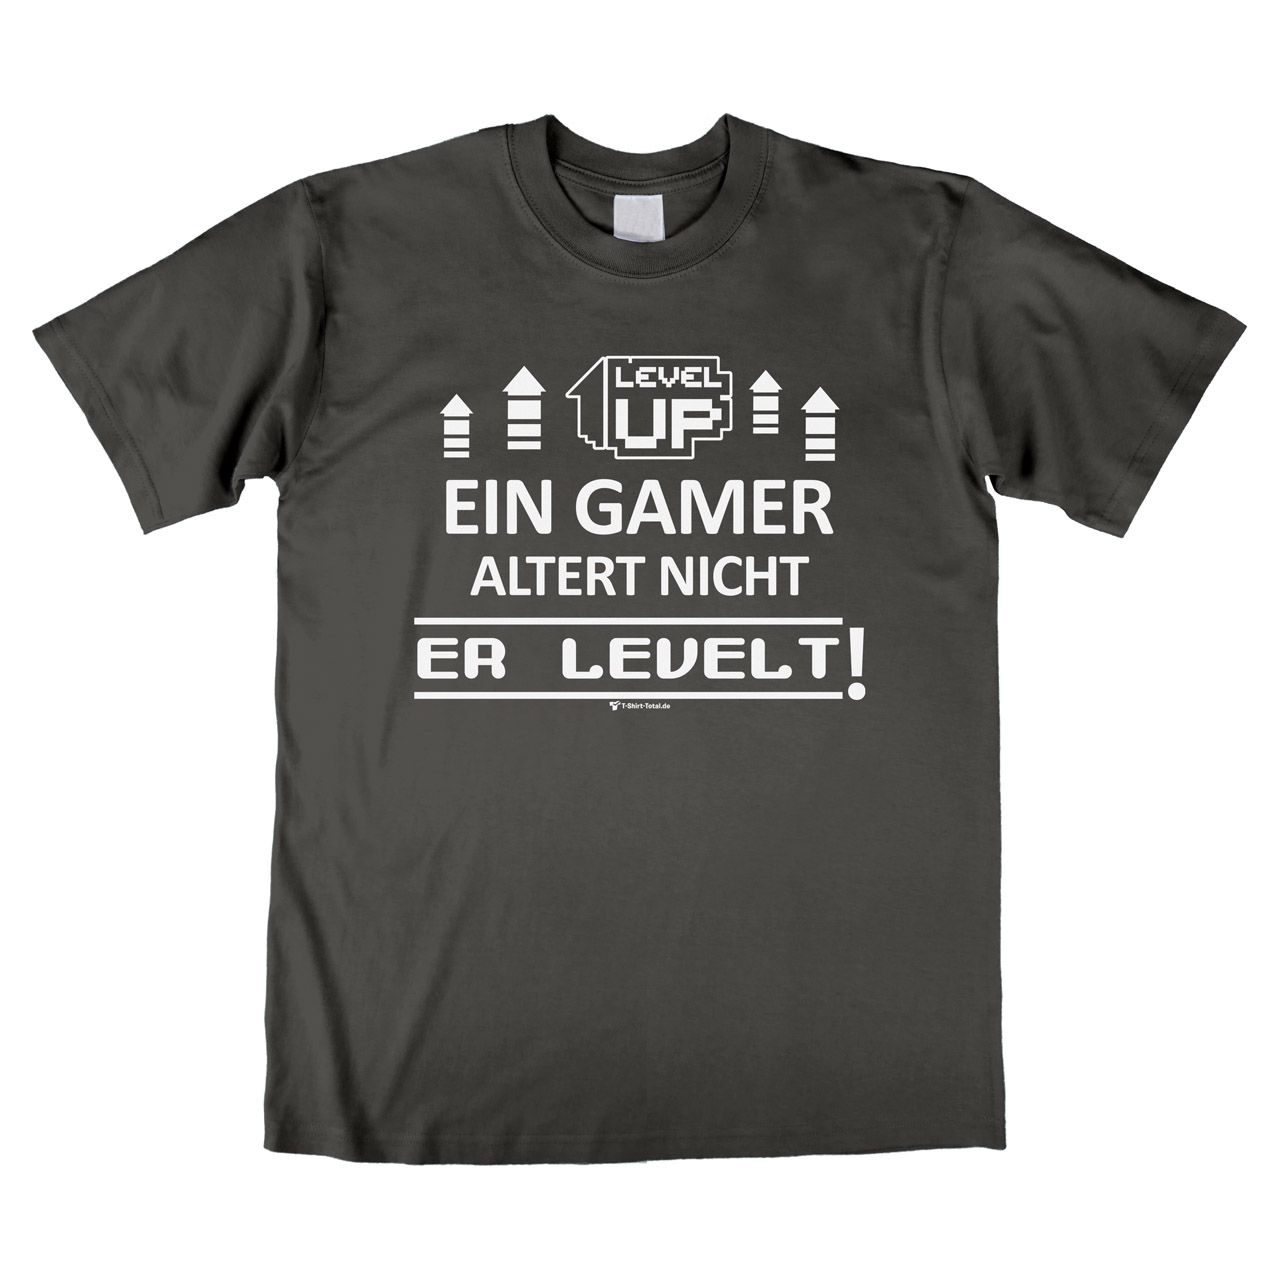 Ein Gamer levelt Unisex T-Shirt grau Medium